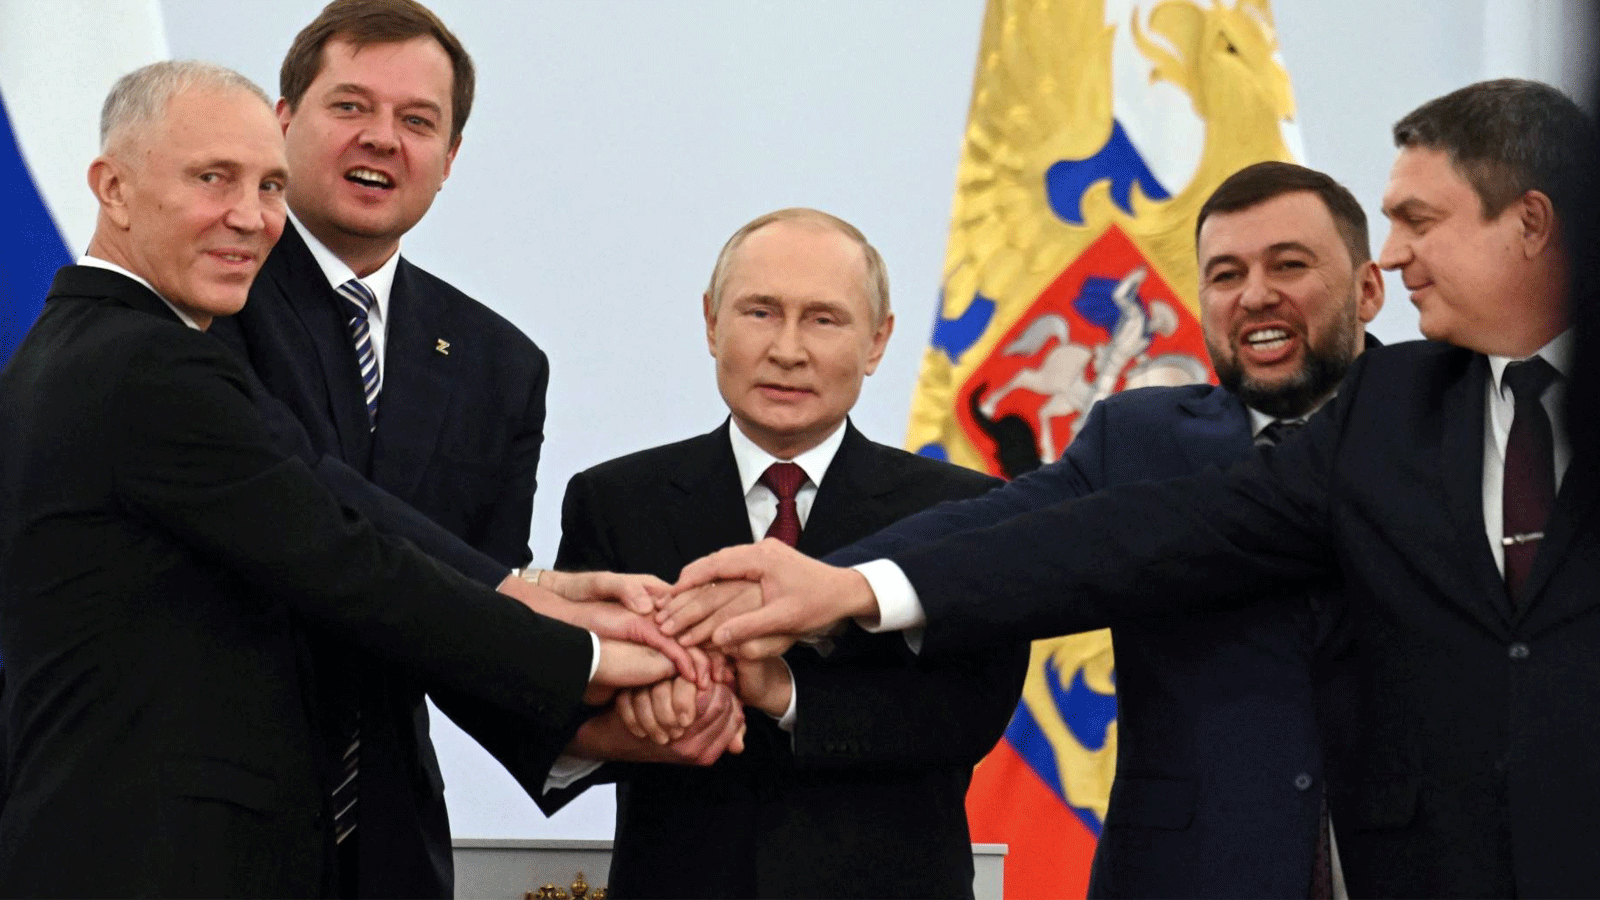  فلاديمير بوتين يشبك اليدين مع قادة المناطق الأربعة التي انضمت الى روسيا. 30 أيلول\سبتمبر 2022